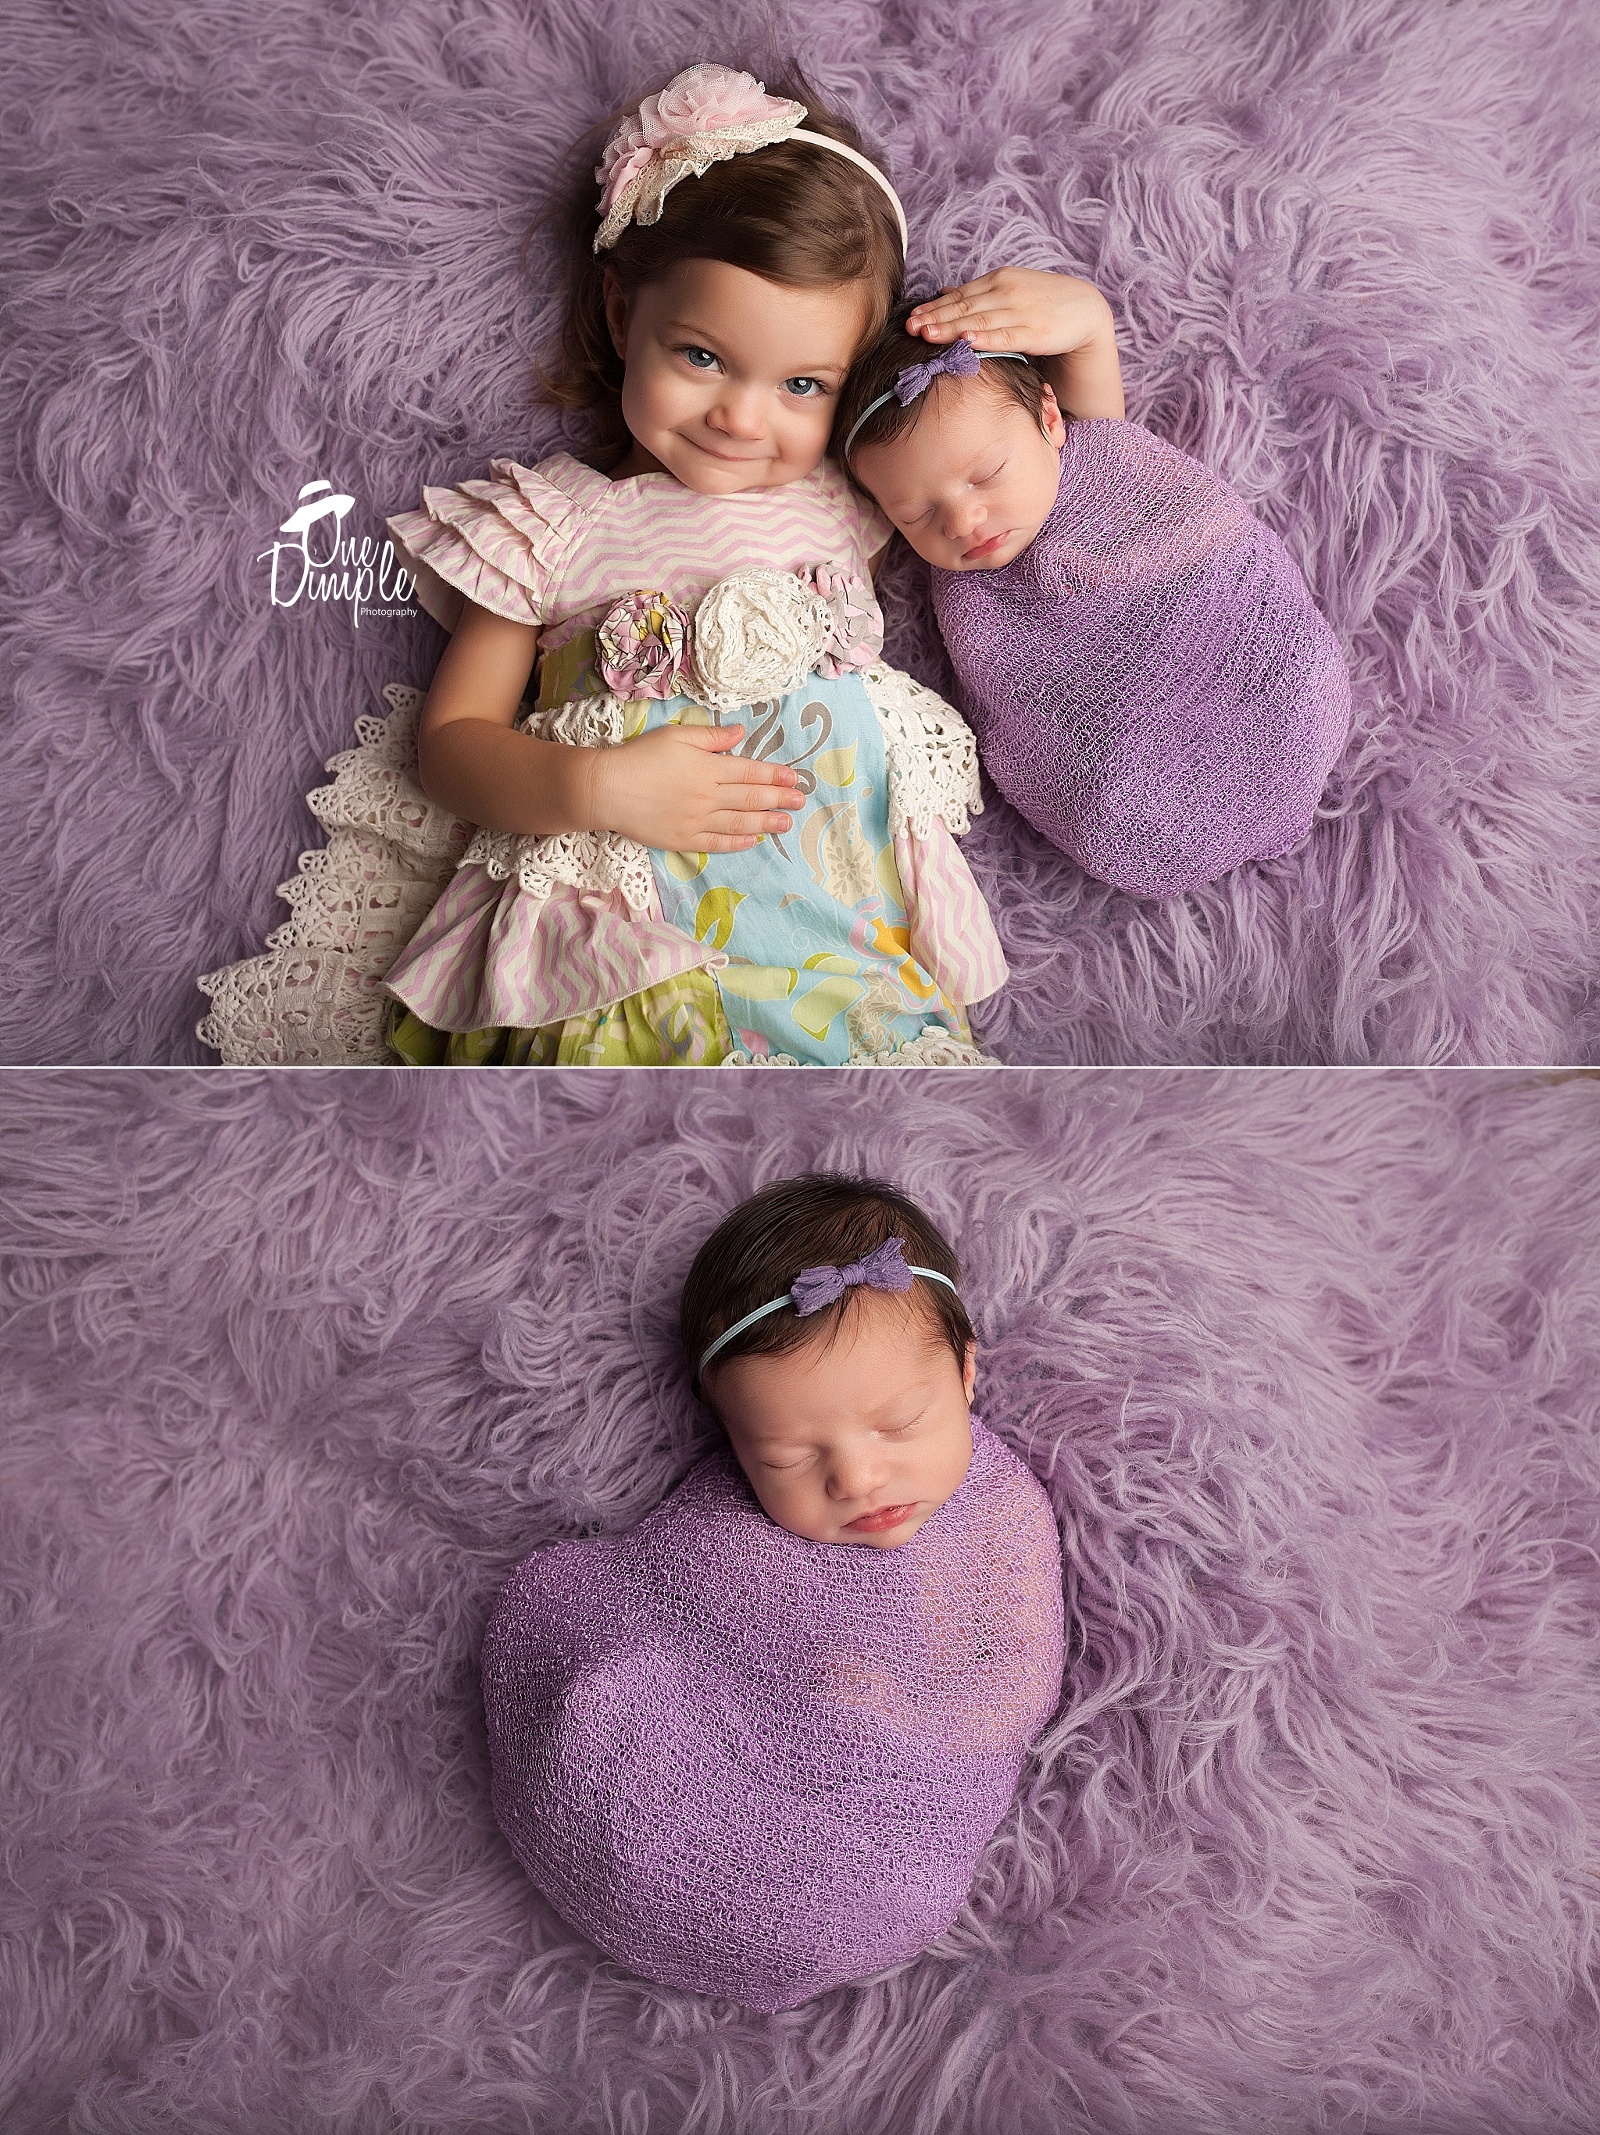 older sibling with newborn sibling on purple rug